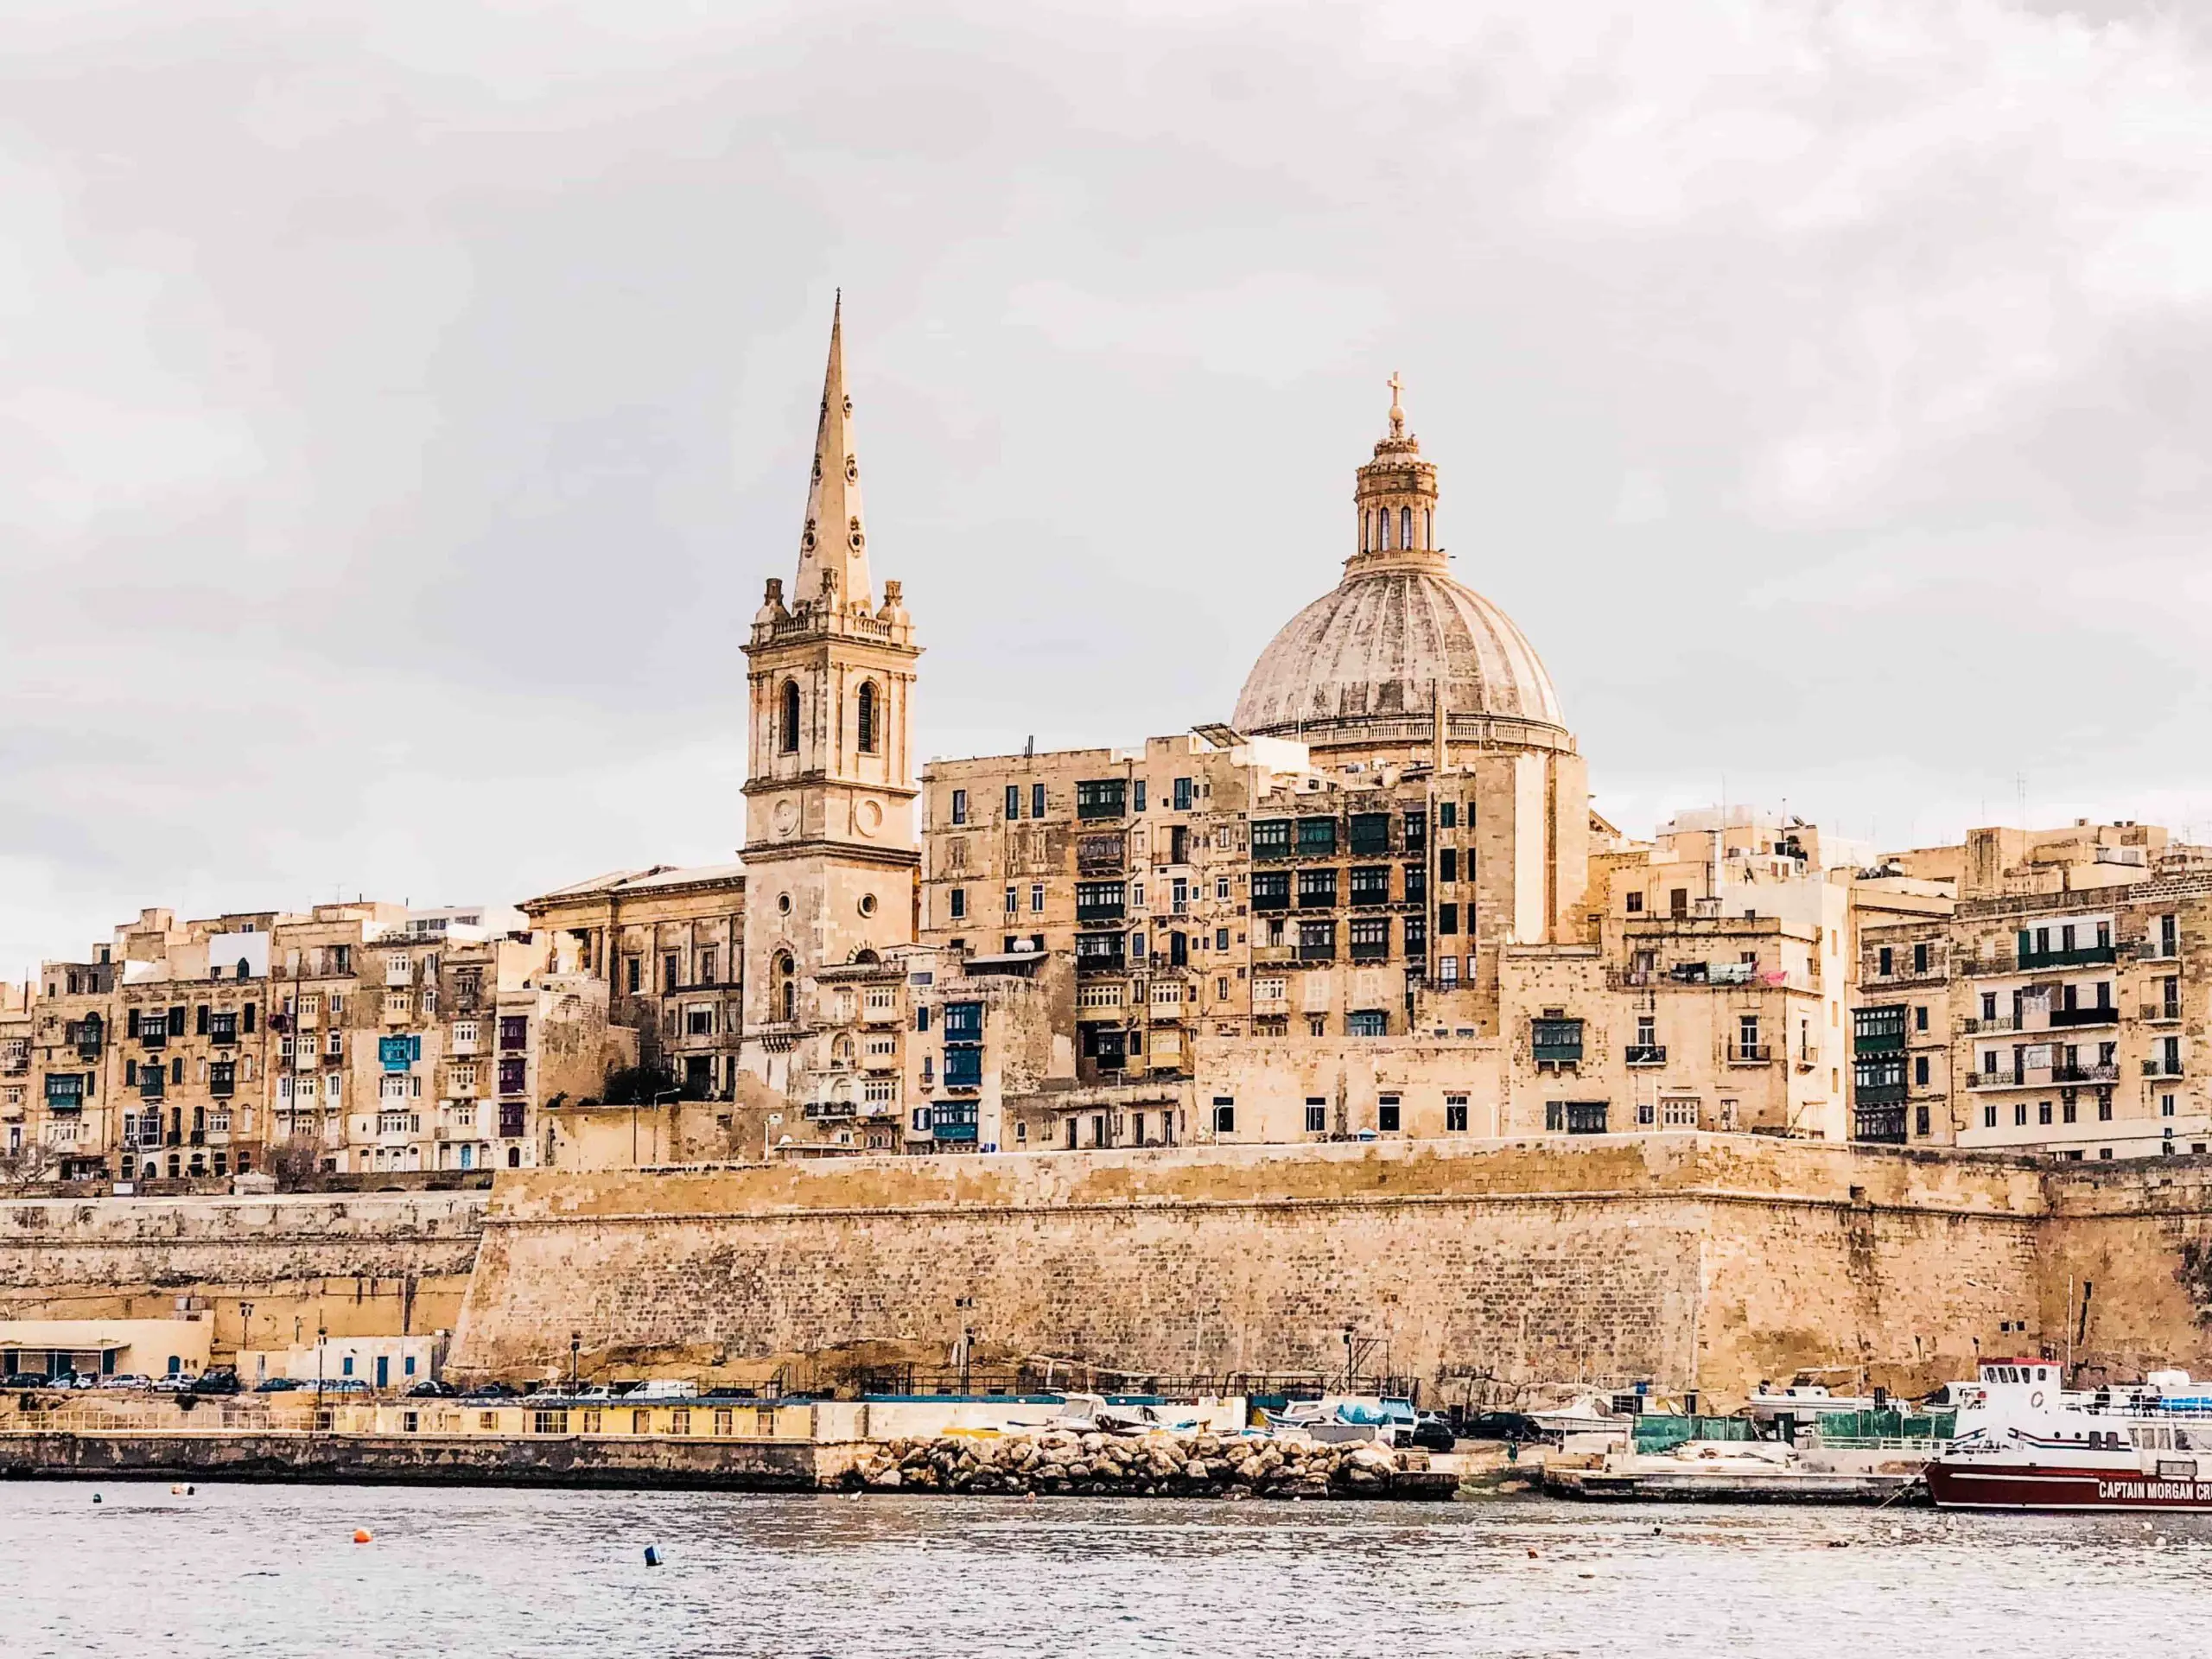 Städtereisen an Ostern, Tipps für Osterurlaub, Städtetrip an Ostern, Valletta Sehenswürdigkeiten, Waterfront Valletta Three Cities